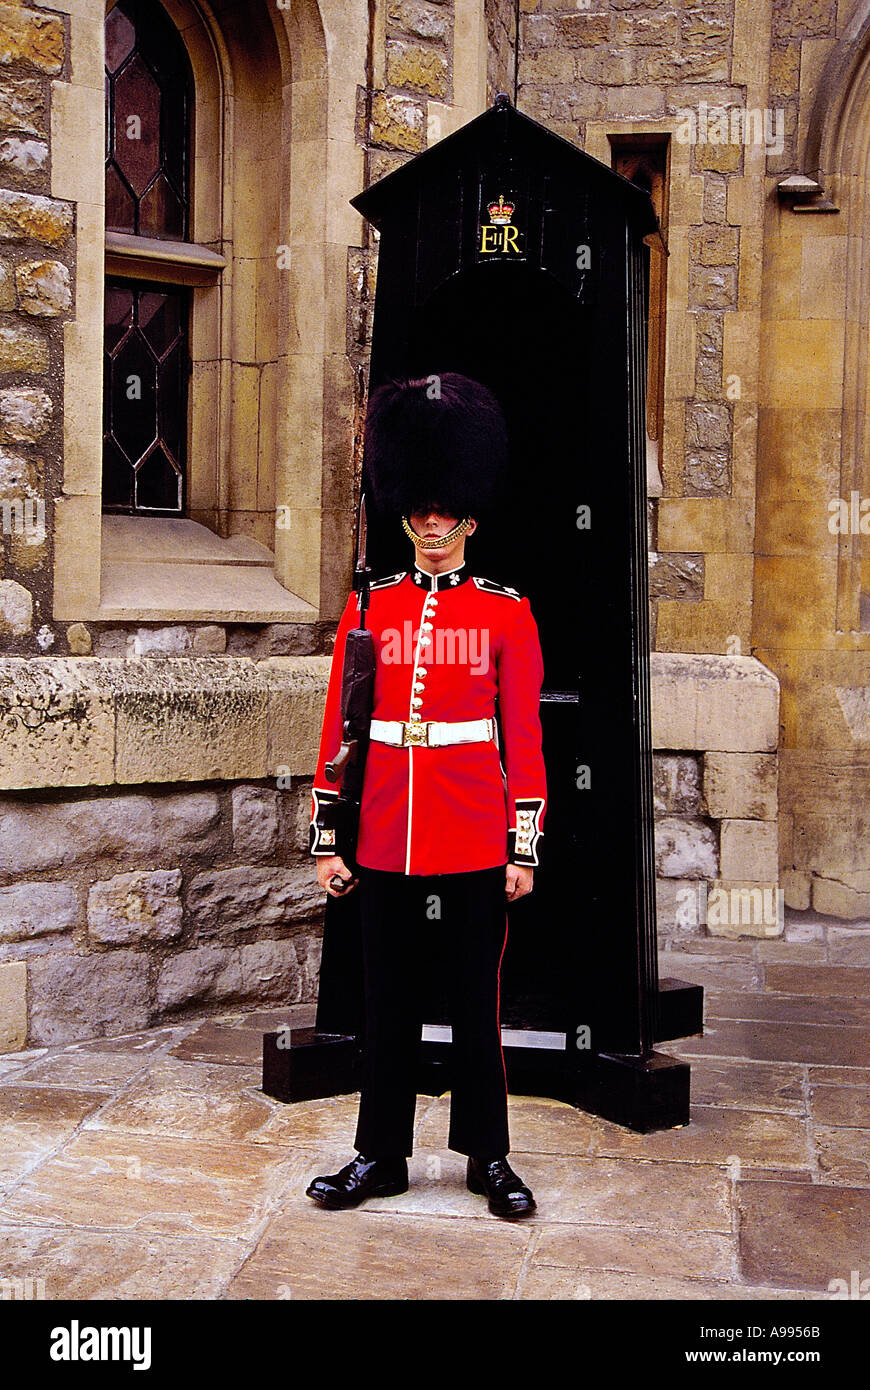 Membre de l'Grenadier Guards monte la garde dans sa tunique rouge traditionnel et bearskin hat Banque D'Images